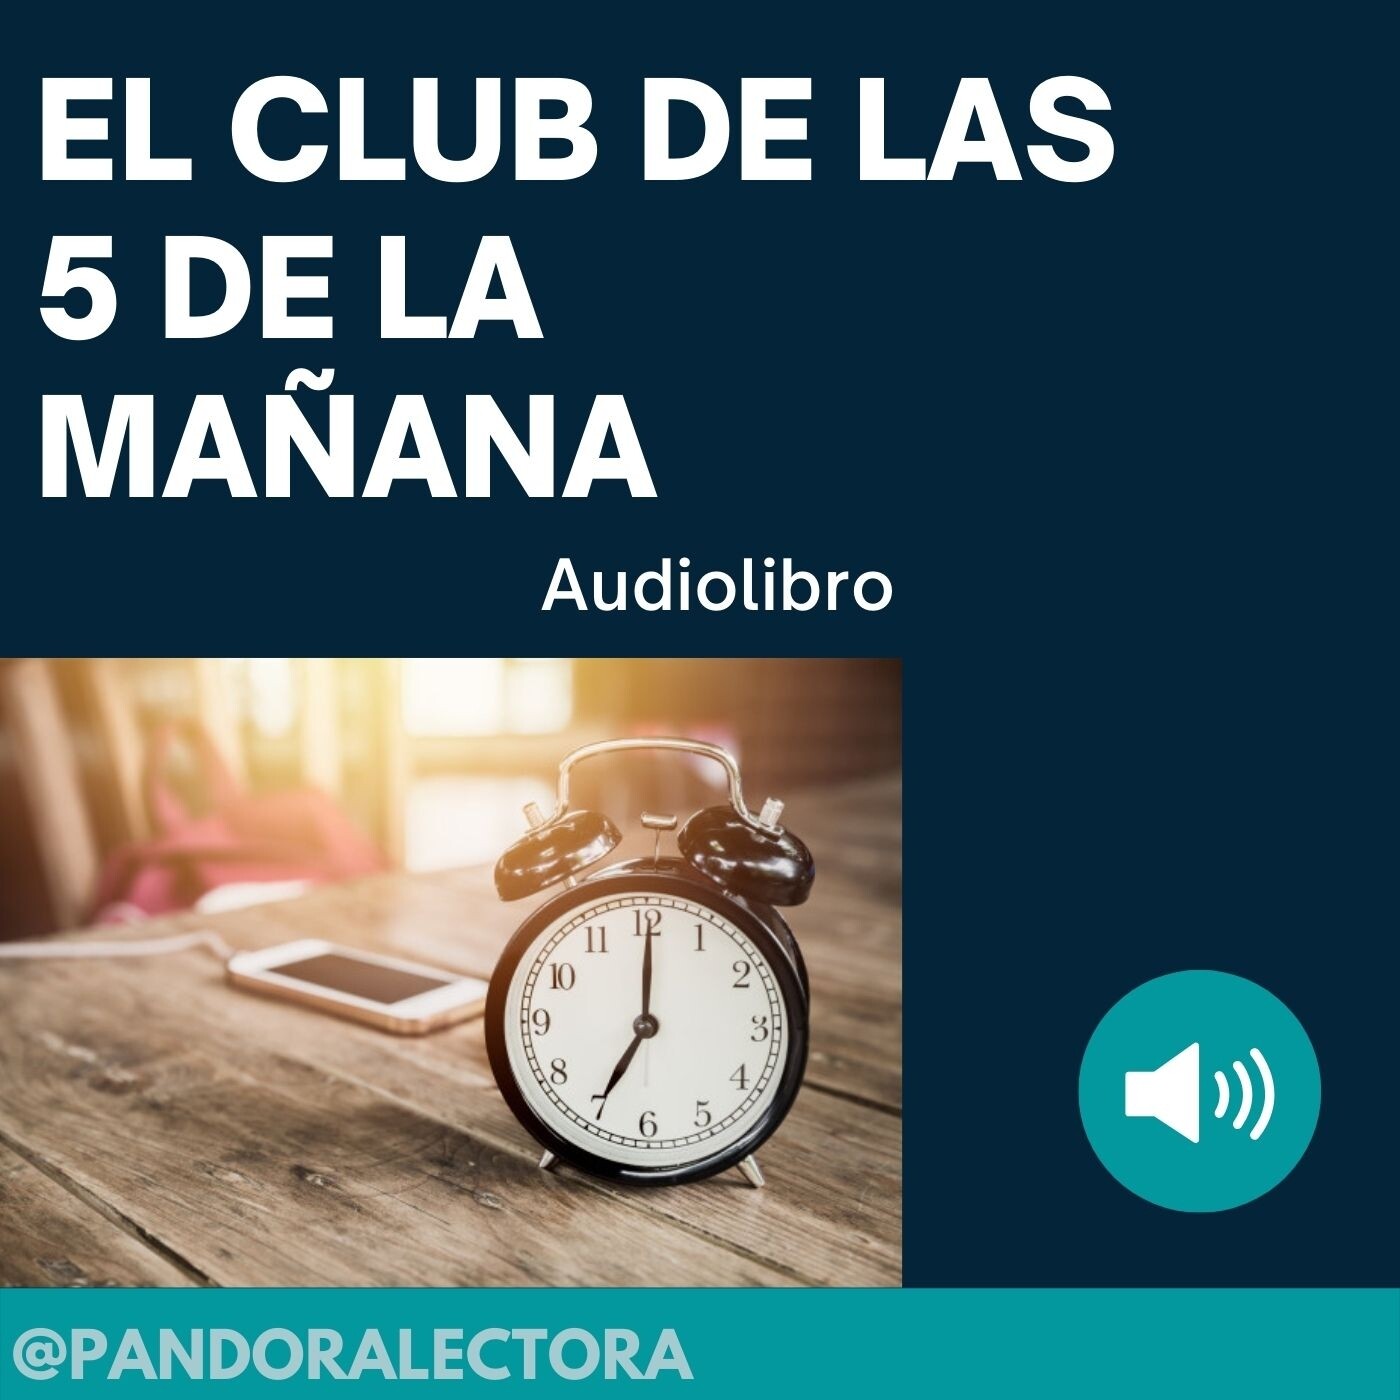 EL CLUB DE LAS DE MAÑANA AUDIOLIBRO - Podcast en iVoox